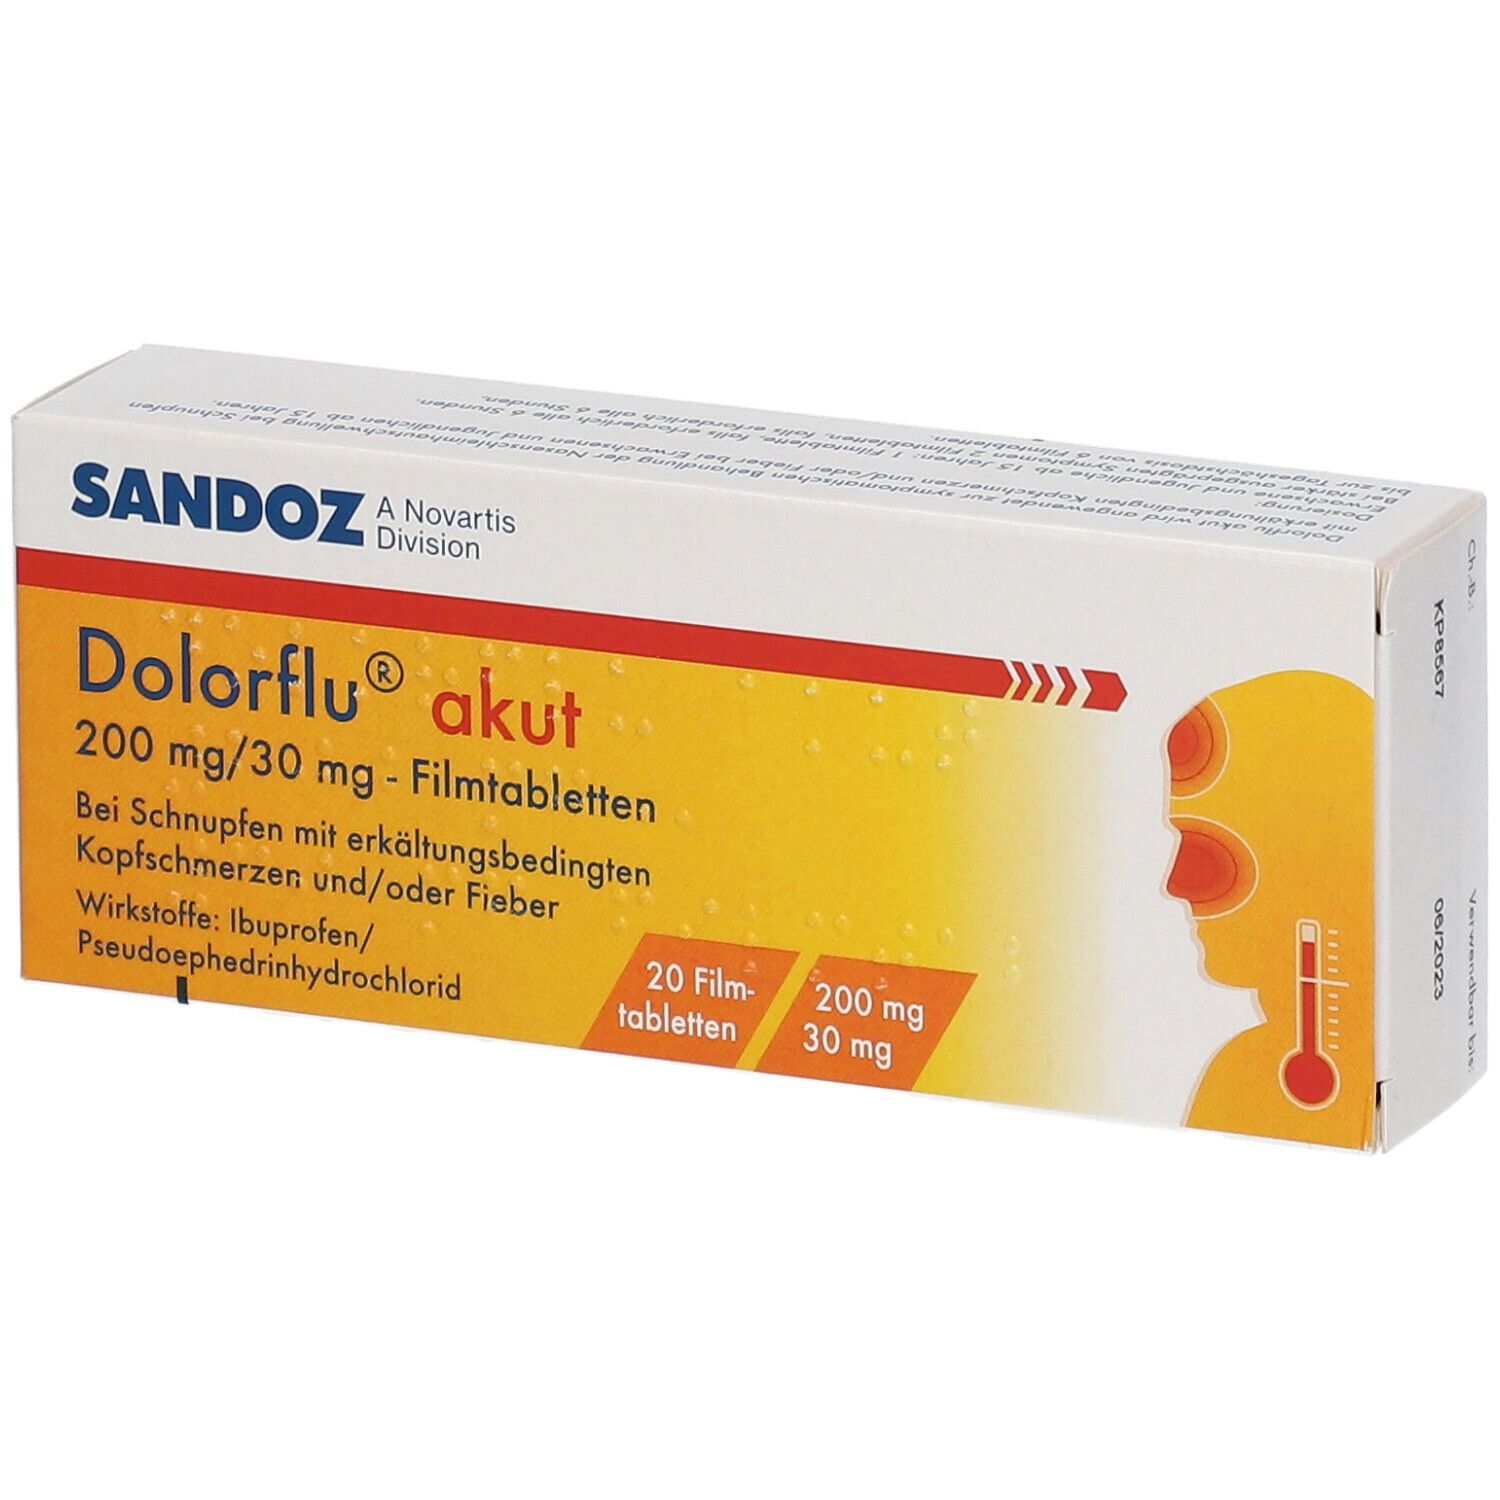 Dolorflu® akut 200 mg/30 mg